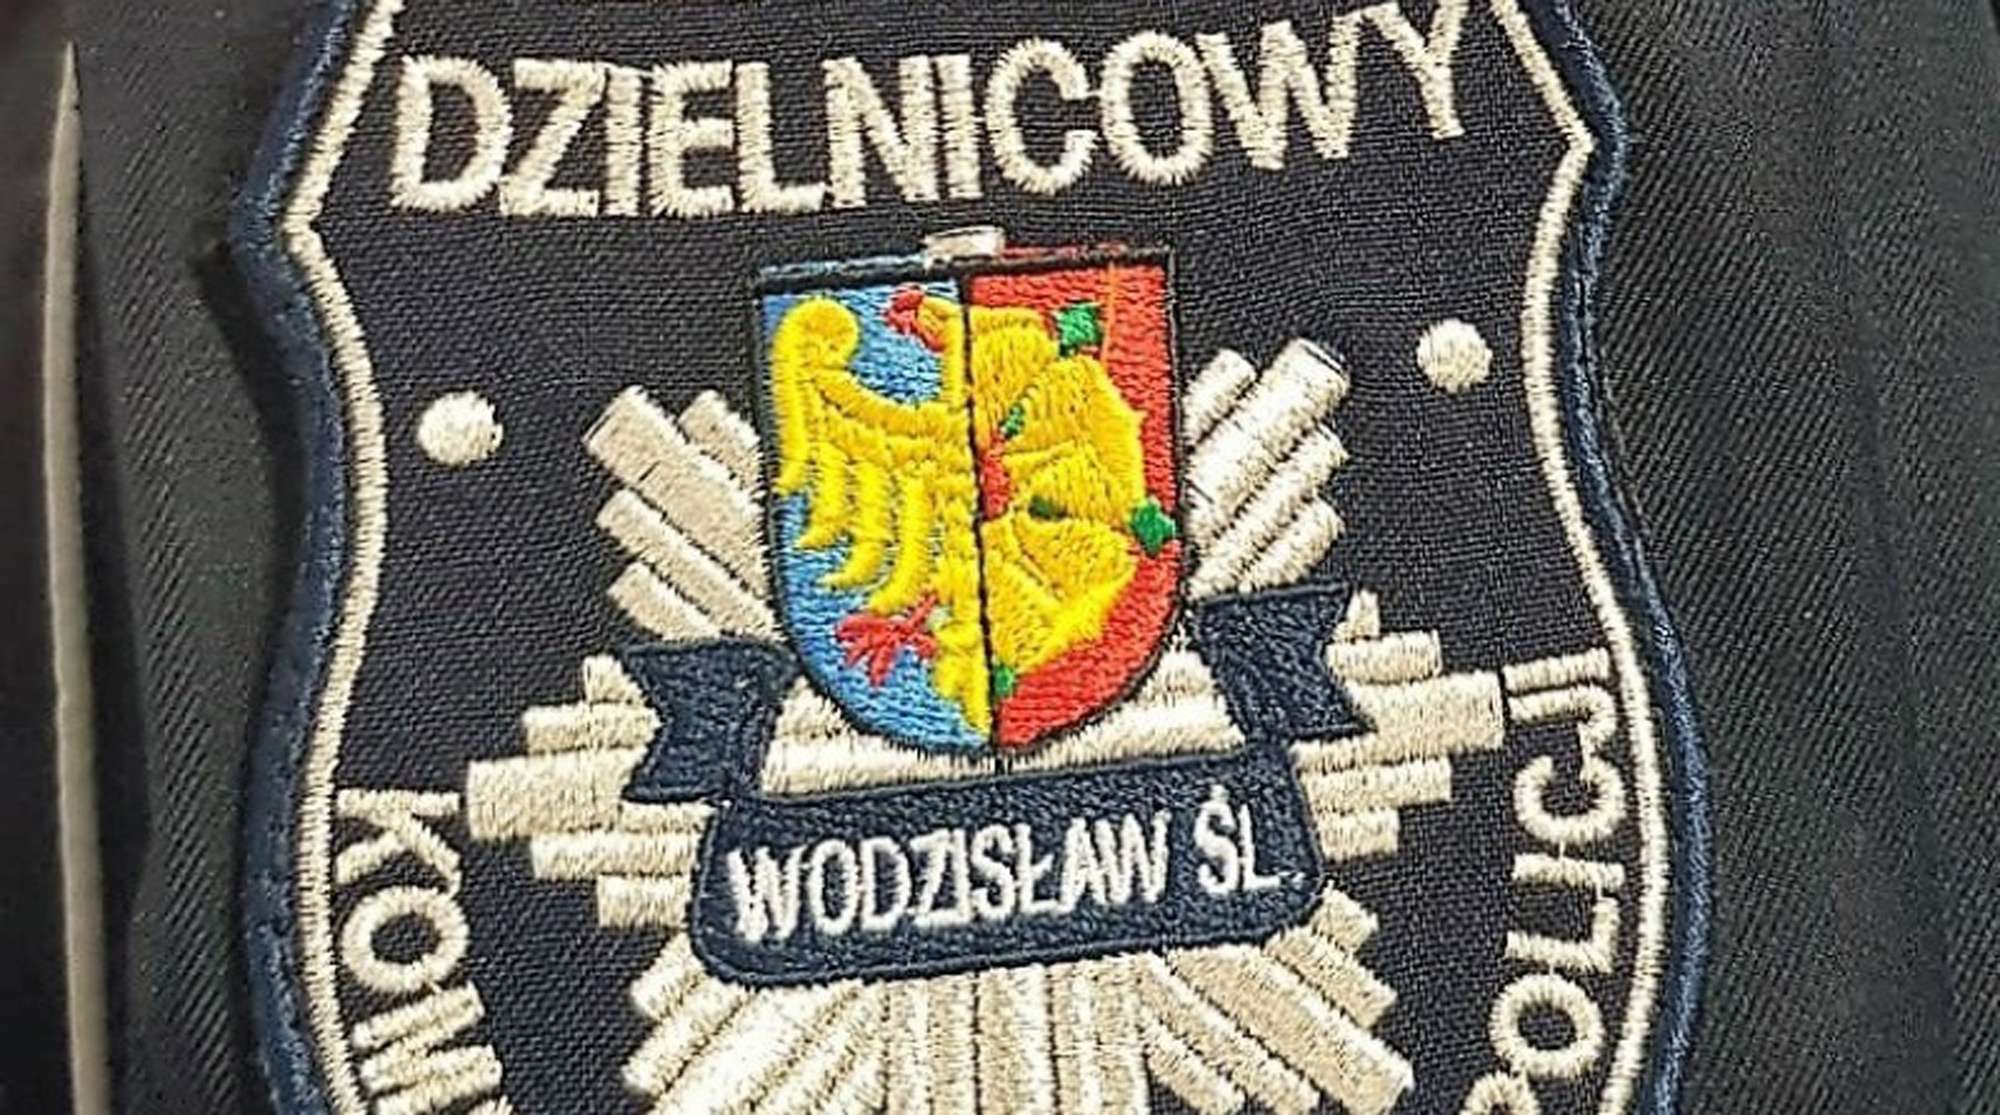 KPP Wodzisław Śląski